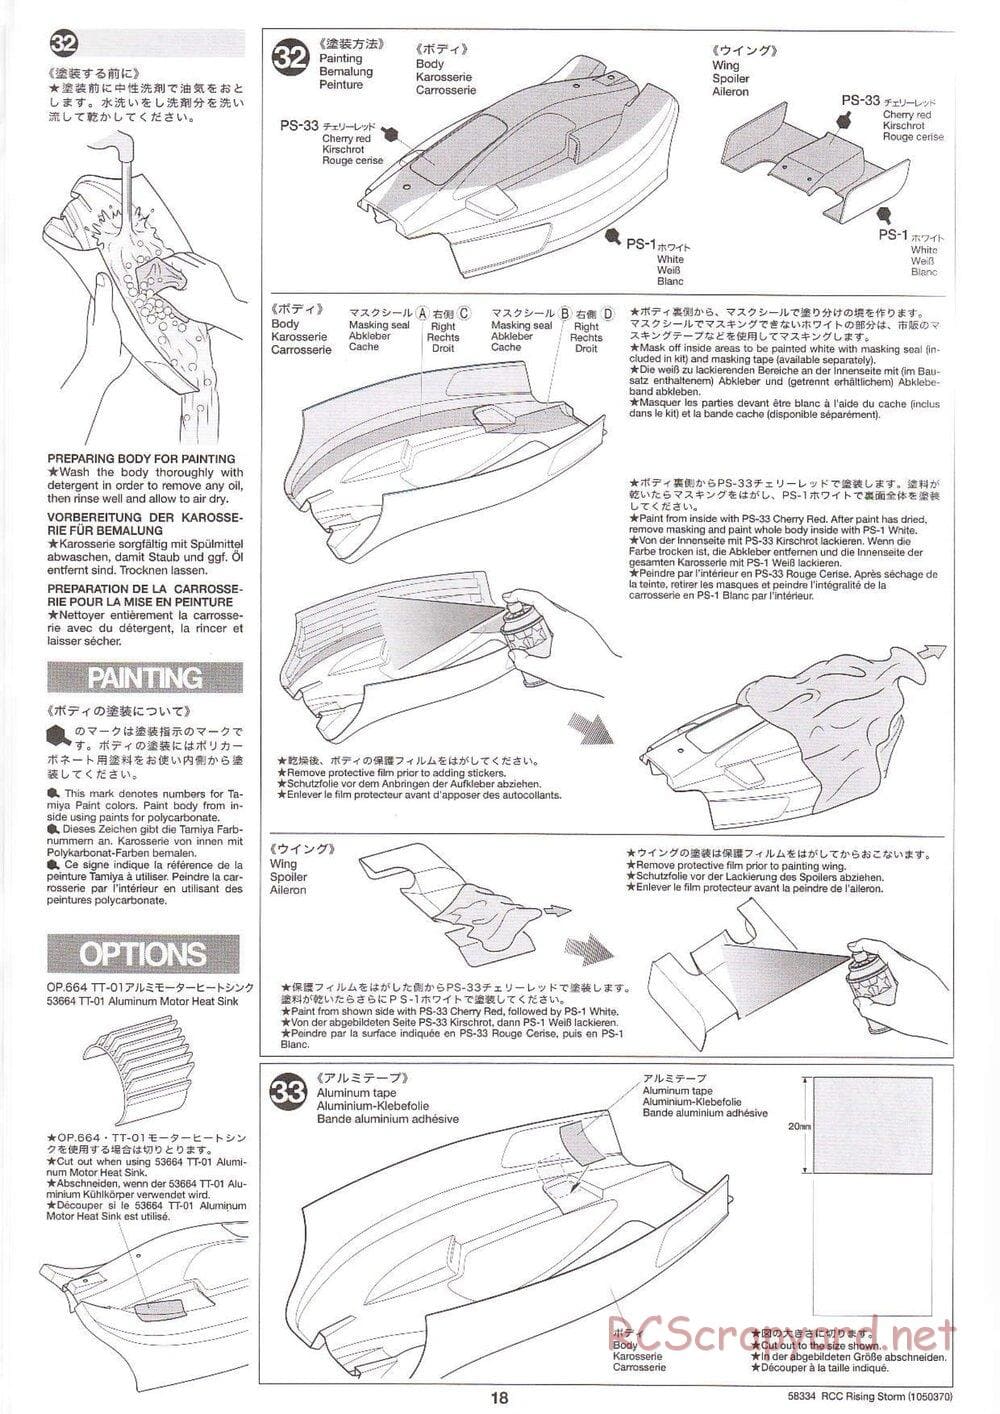 Tamiya - Rising Storm Chassis - Manual - Page 18